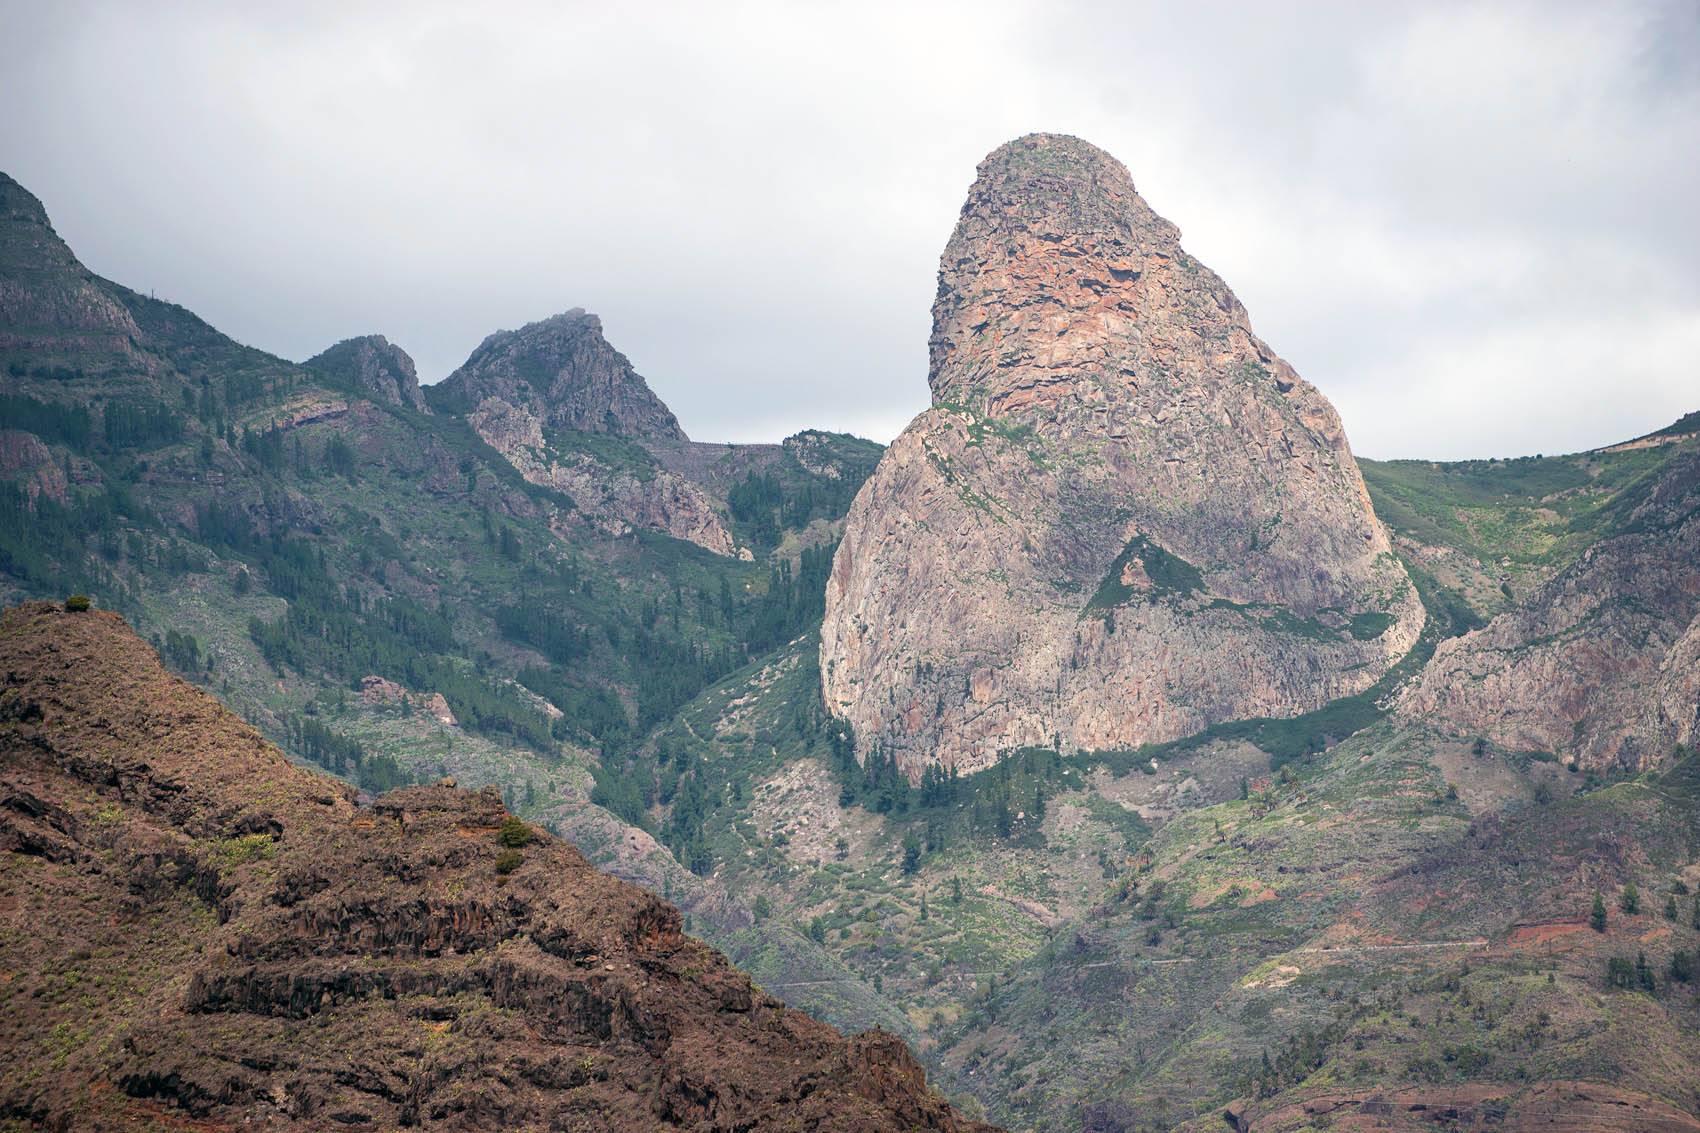 The Agando Lava Rock